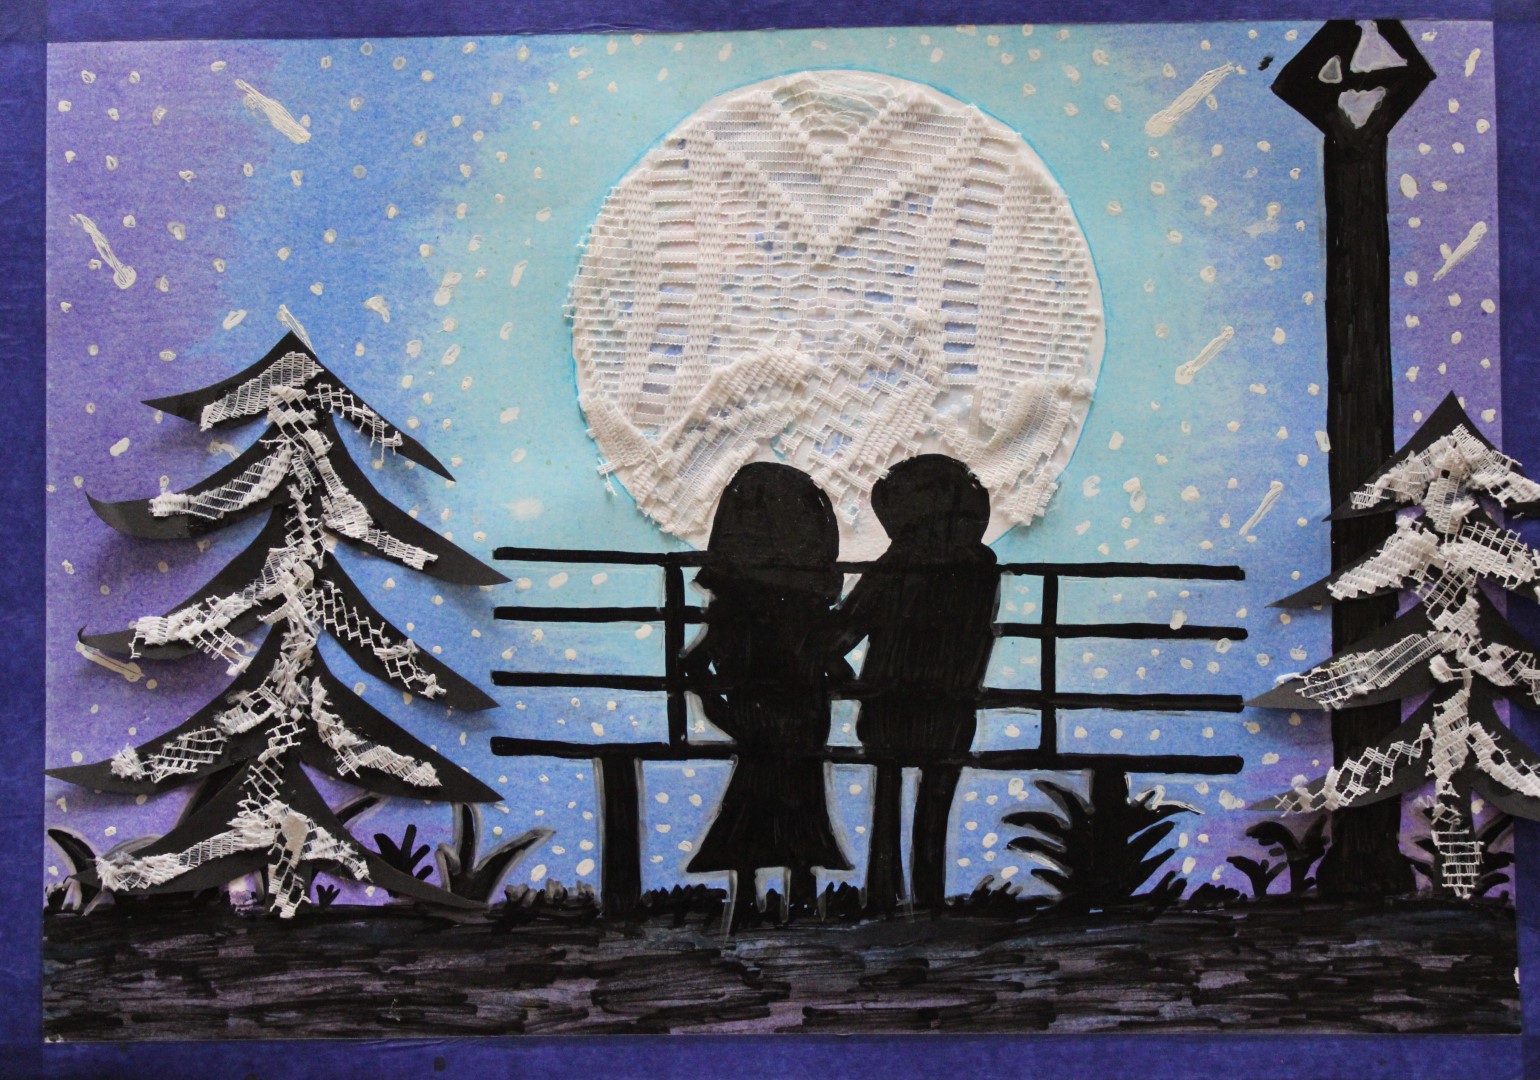 Praca plastyczna przedstawiająca chłopaka i dziewczynę siedzących na ławce i oglądających księżyc.